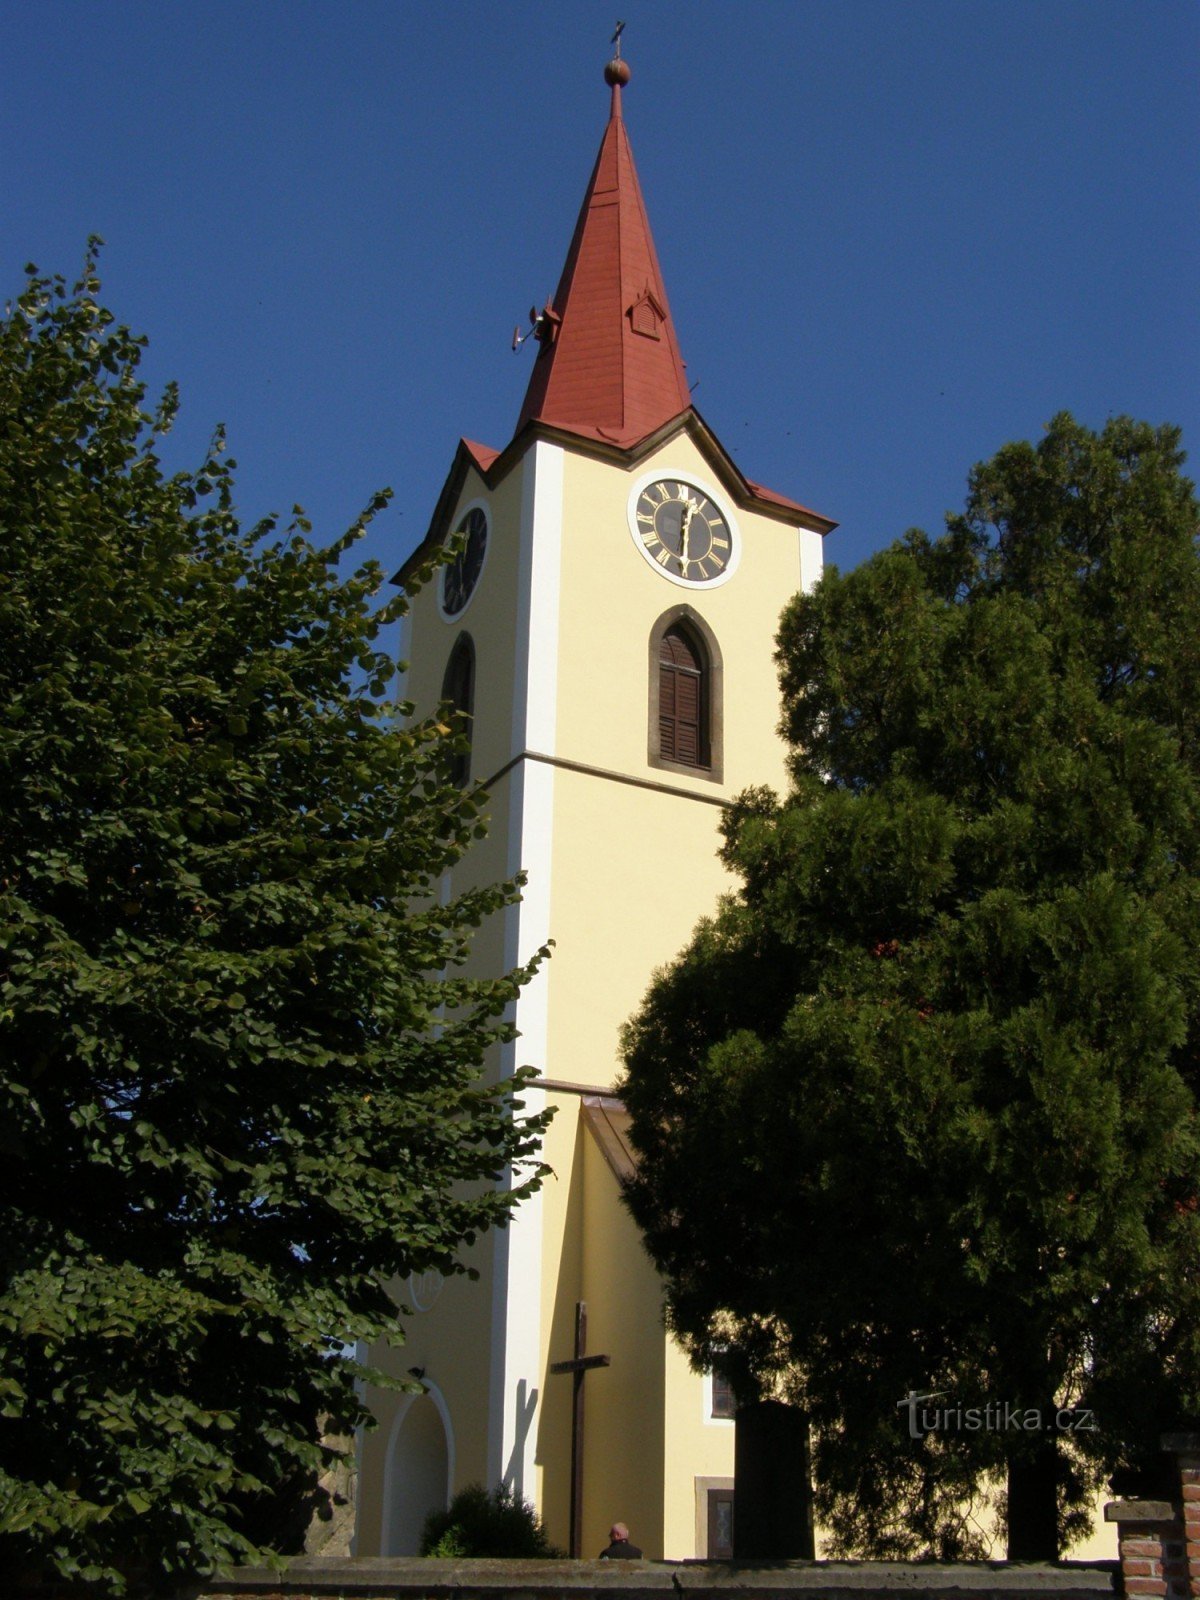 Jasenná - St. Georges kyrka